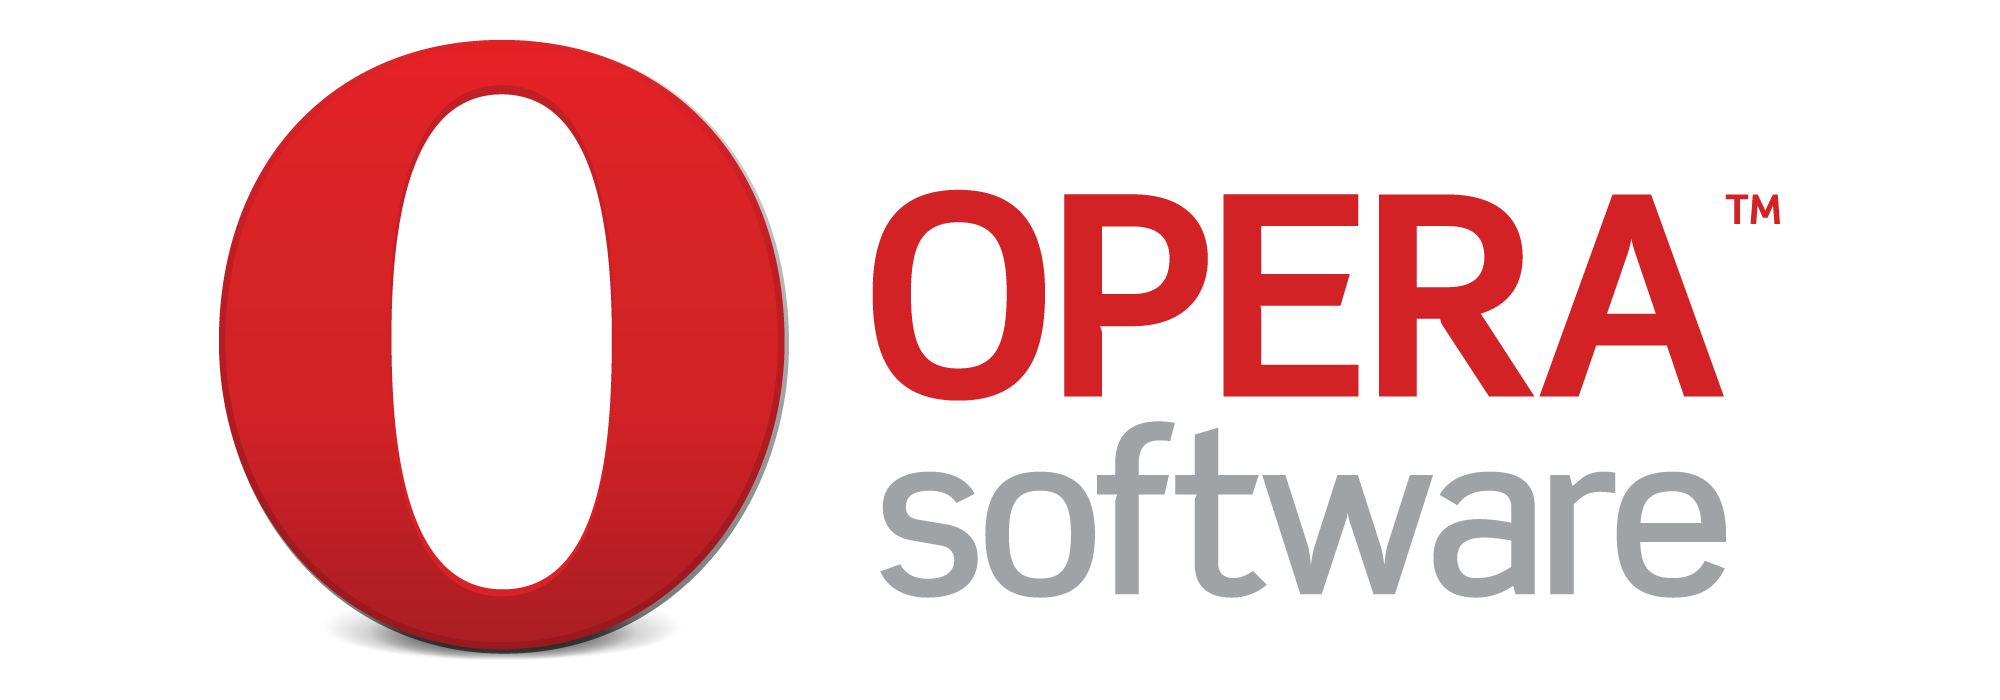 دانلود رایگان جدیدترین ورژن اوپرا مینی Opera 7.5